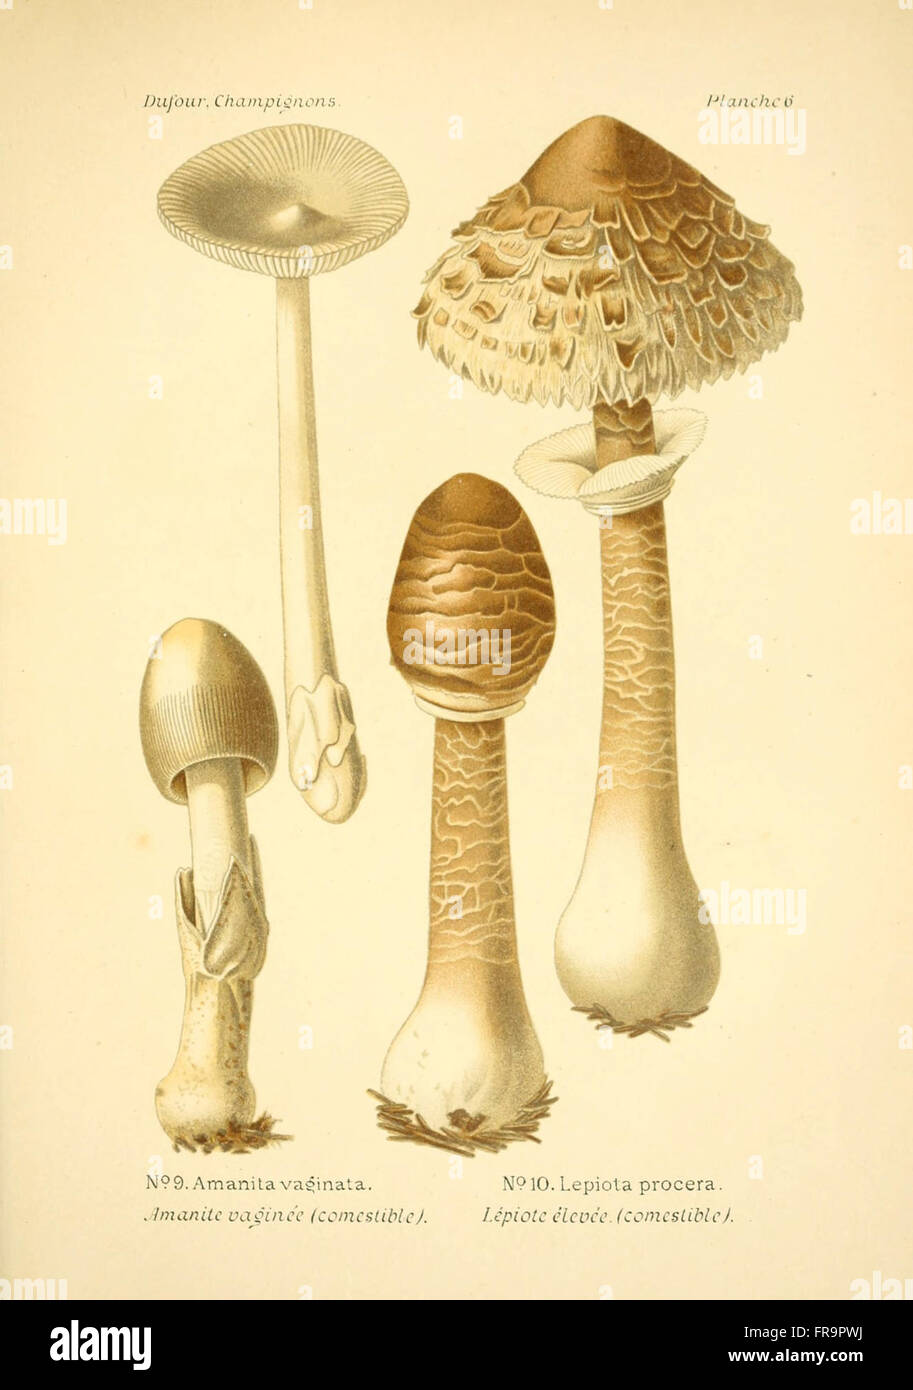 Atlas des champignons comestibles et vC3A9nC3A9neux (Planche 6) Stock Photo